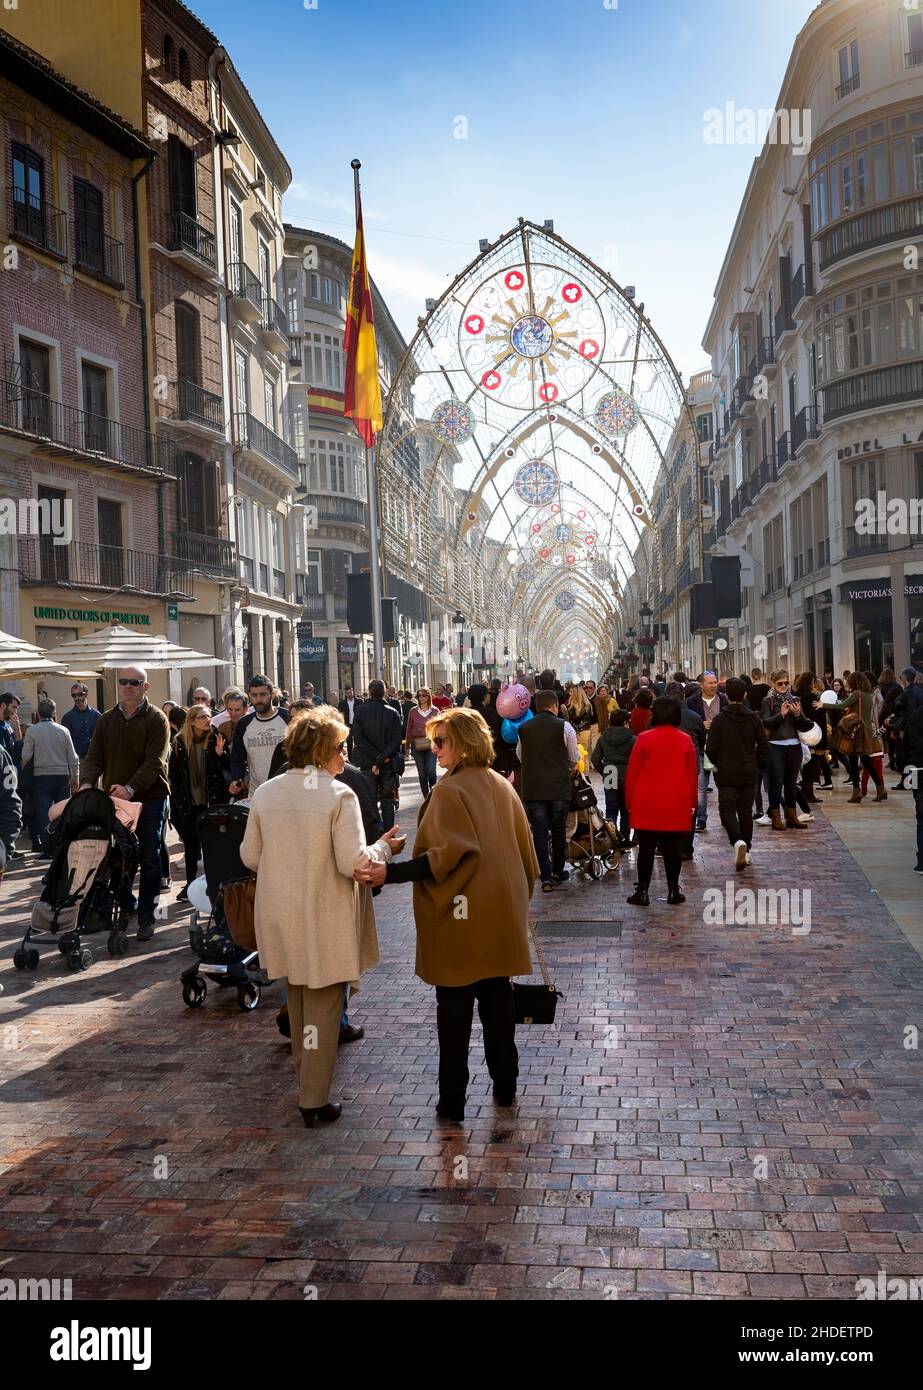 Street scene, Malaga city, Andalusia, Spain Stock Photo